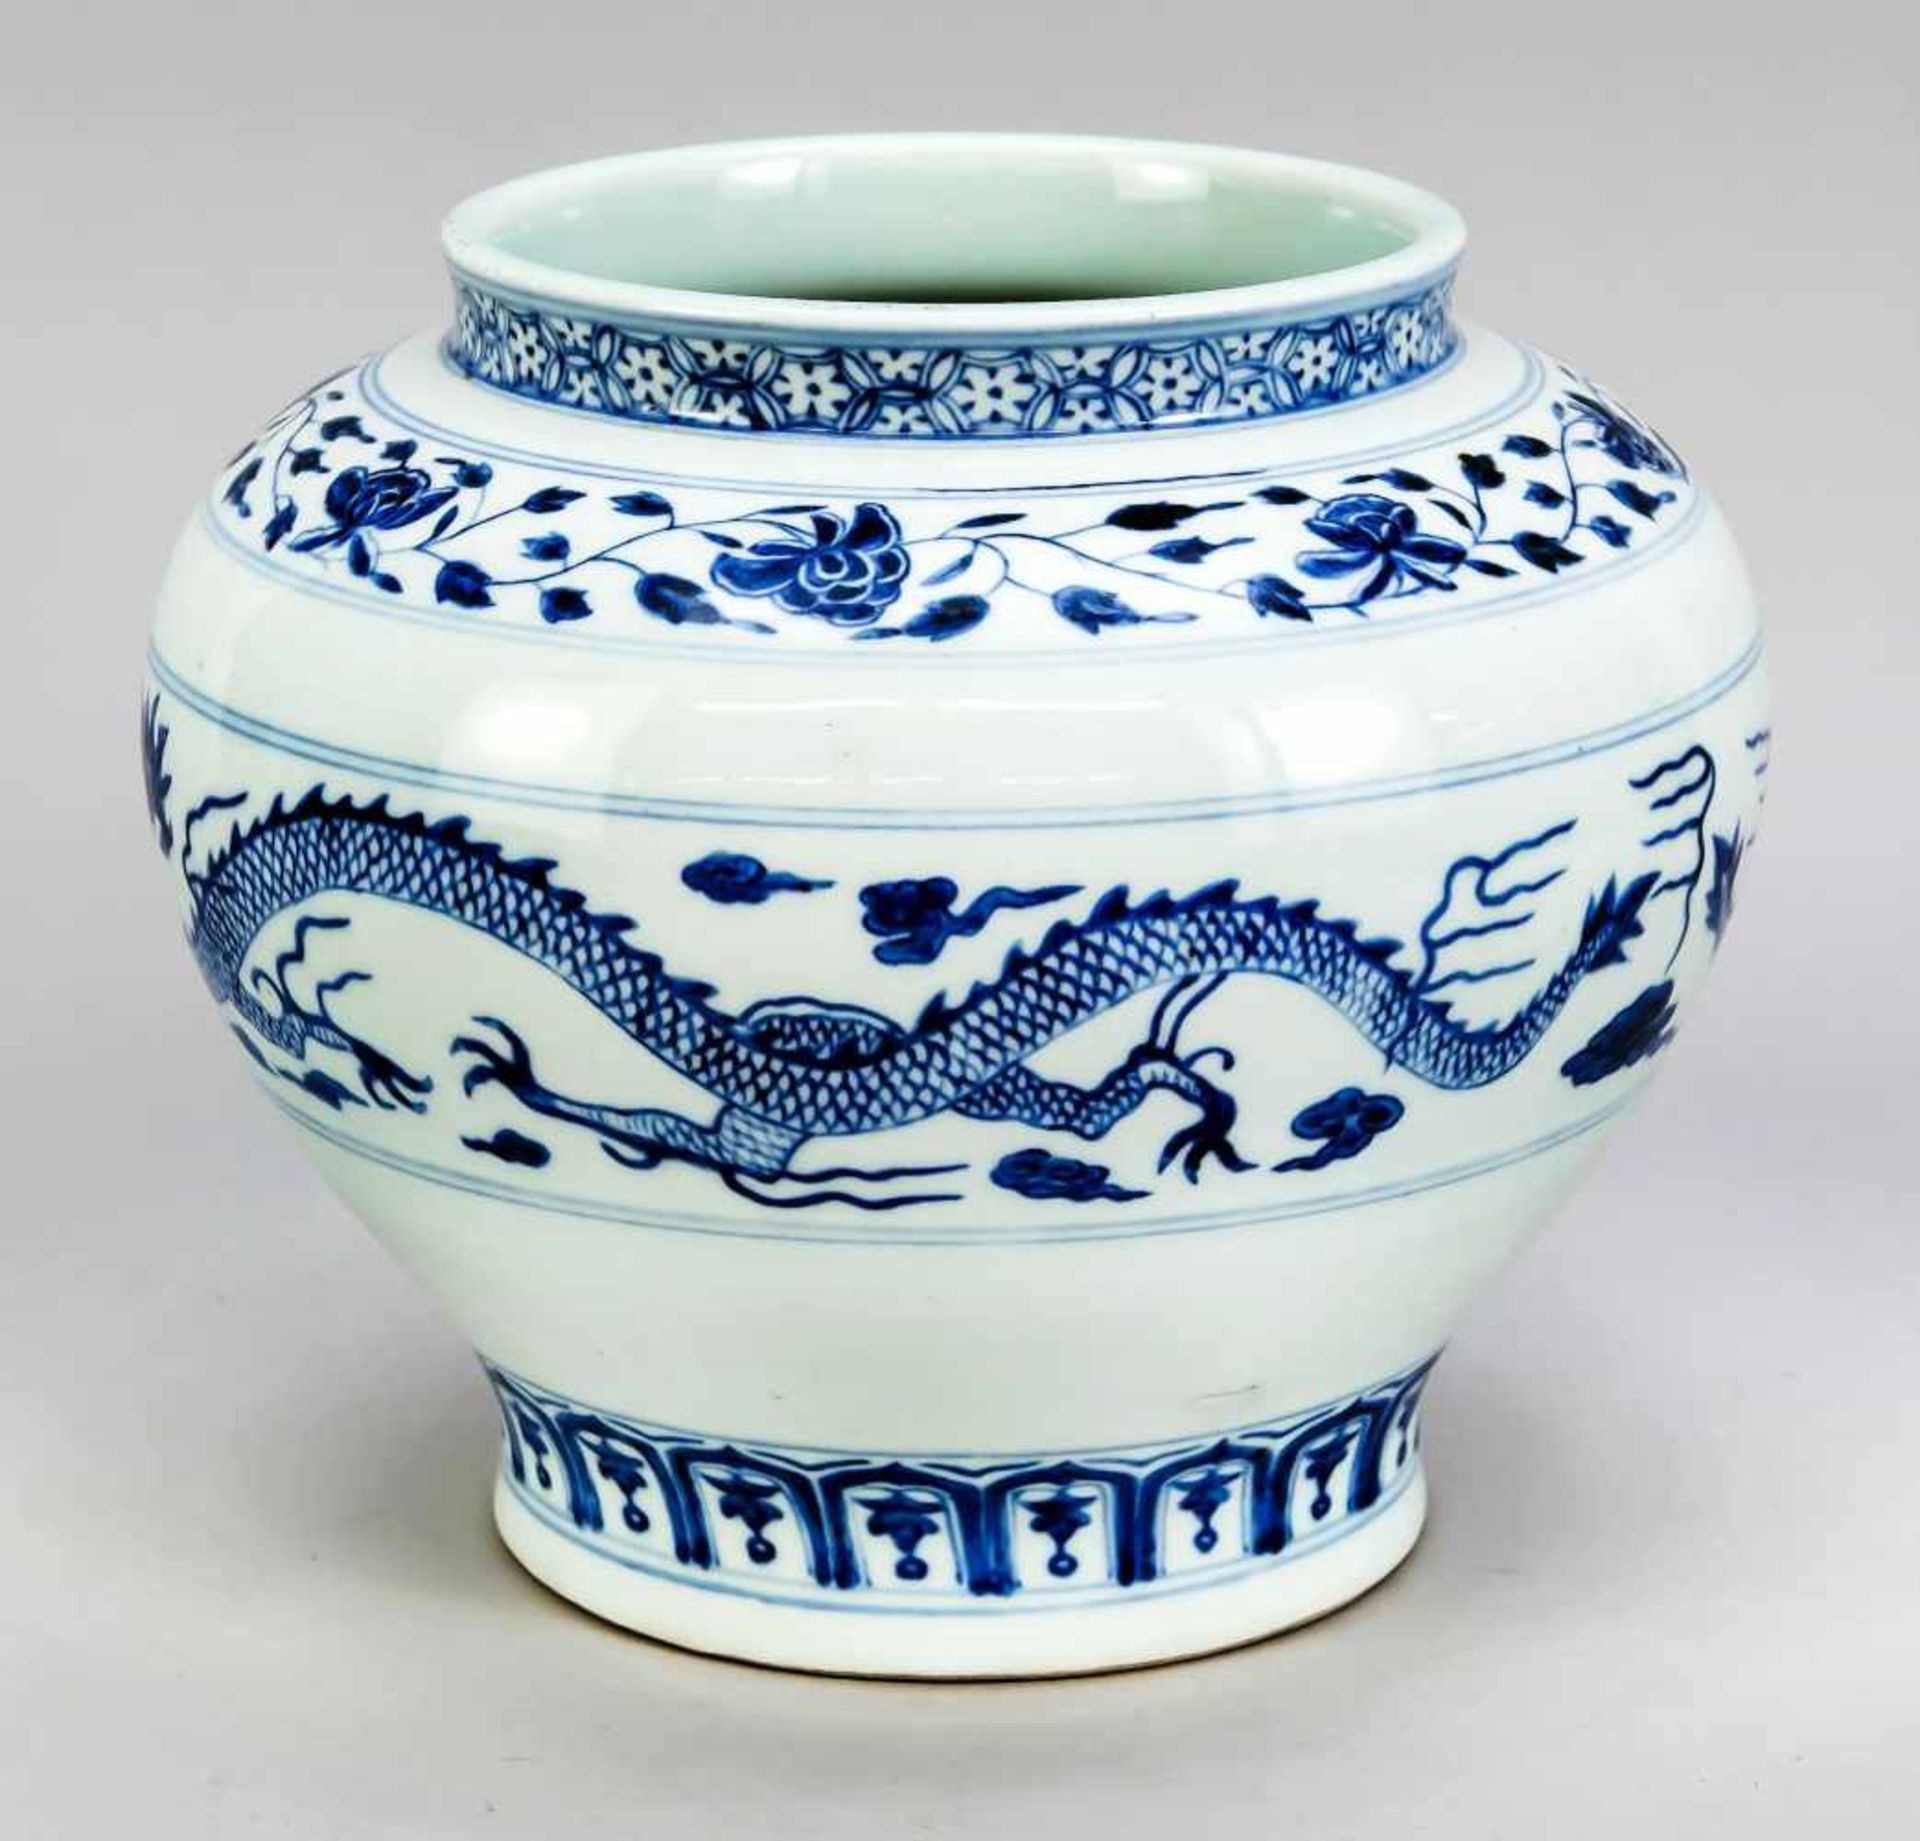 Drachenvase, China, 19. Jh. Bauchige, leicht geschulterte Form mit leicht wulstigemLippenrand.